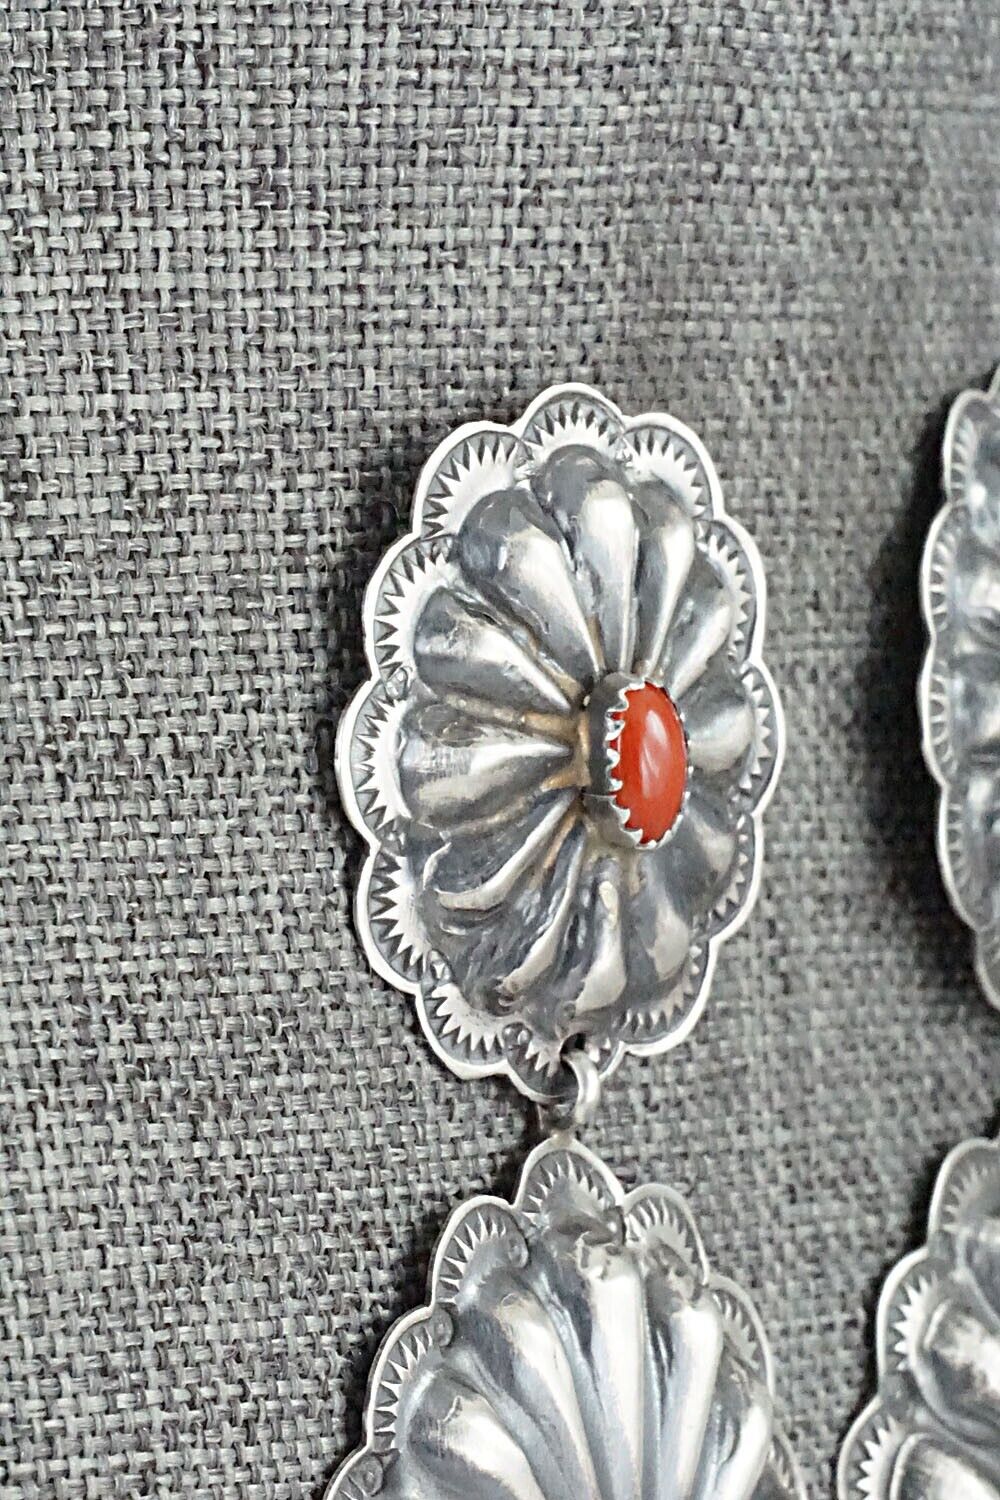 Coral & Sterling Silver Earrings - Rita Lee